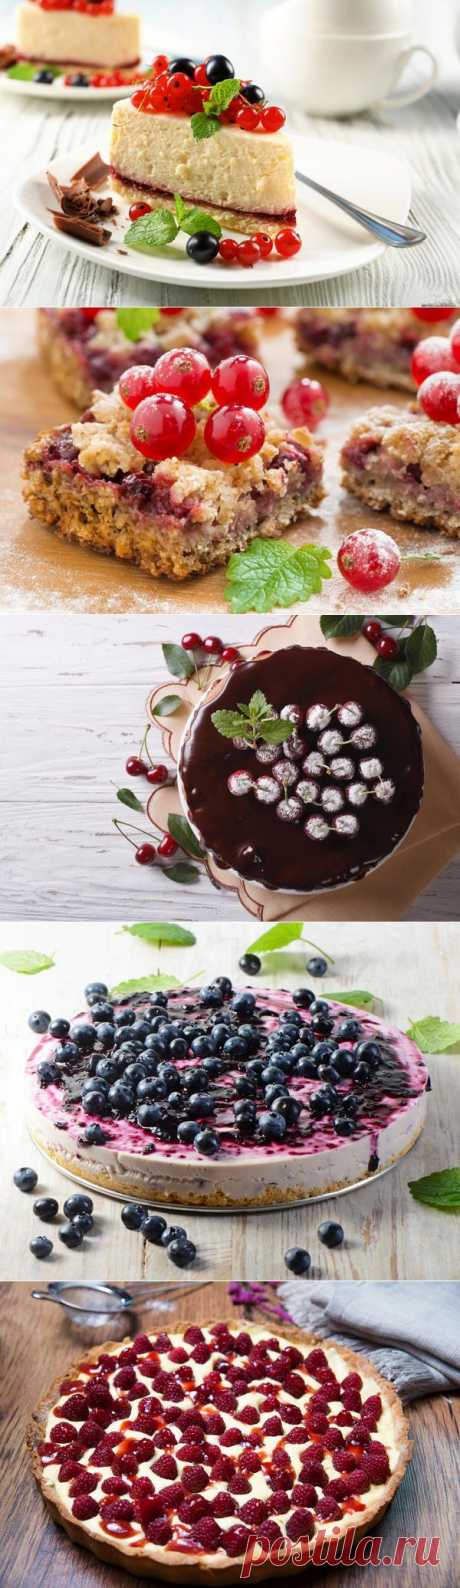 Устроим праздник: 10 рецептов выпечки с ягодами